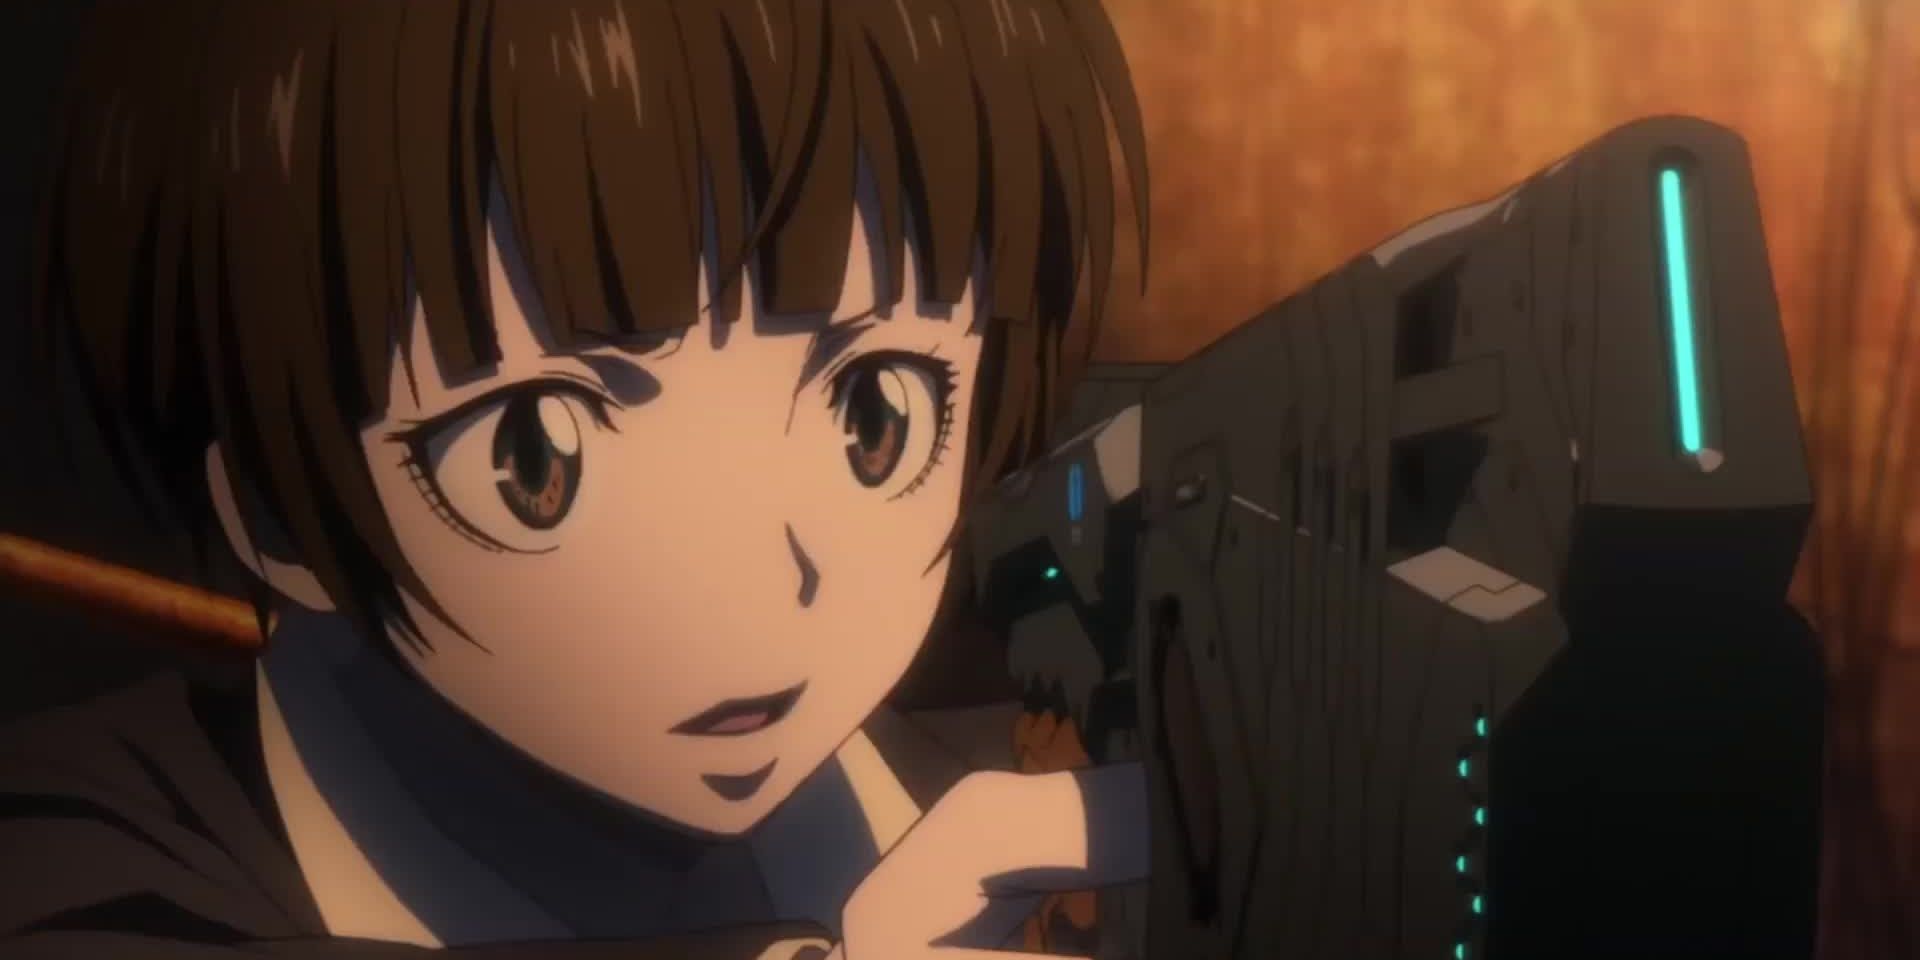 Uma imagem de um personagem do Psycho-Pass segurando um rifle